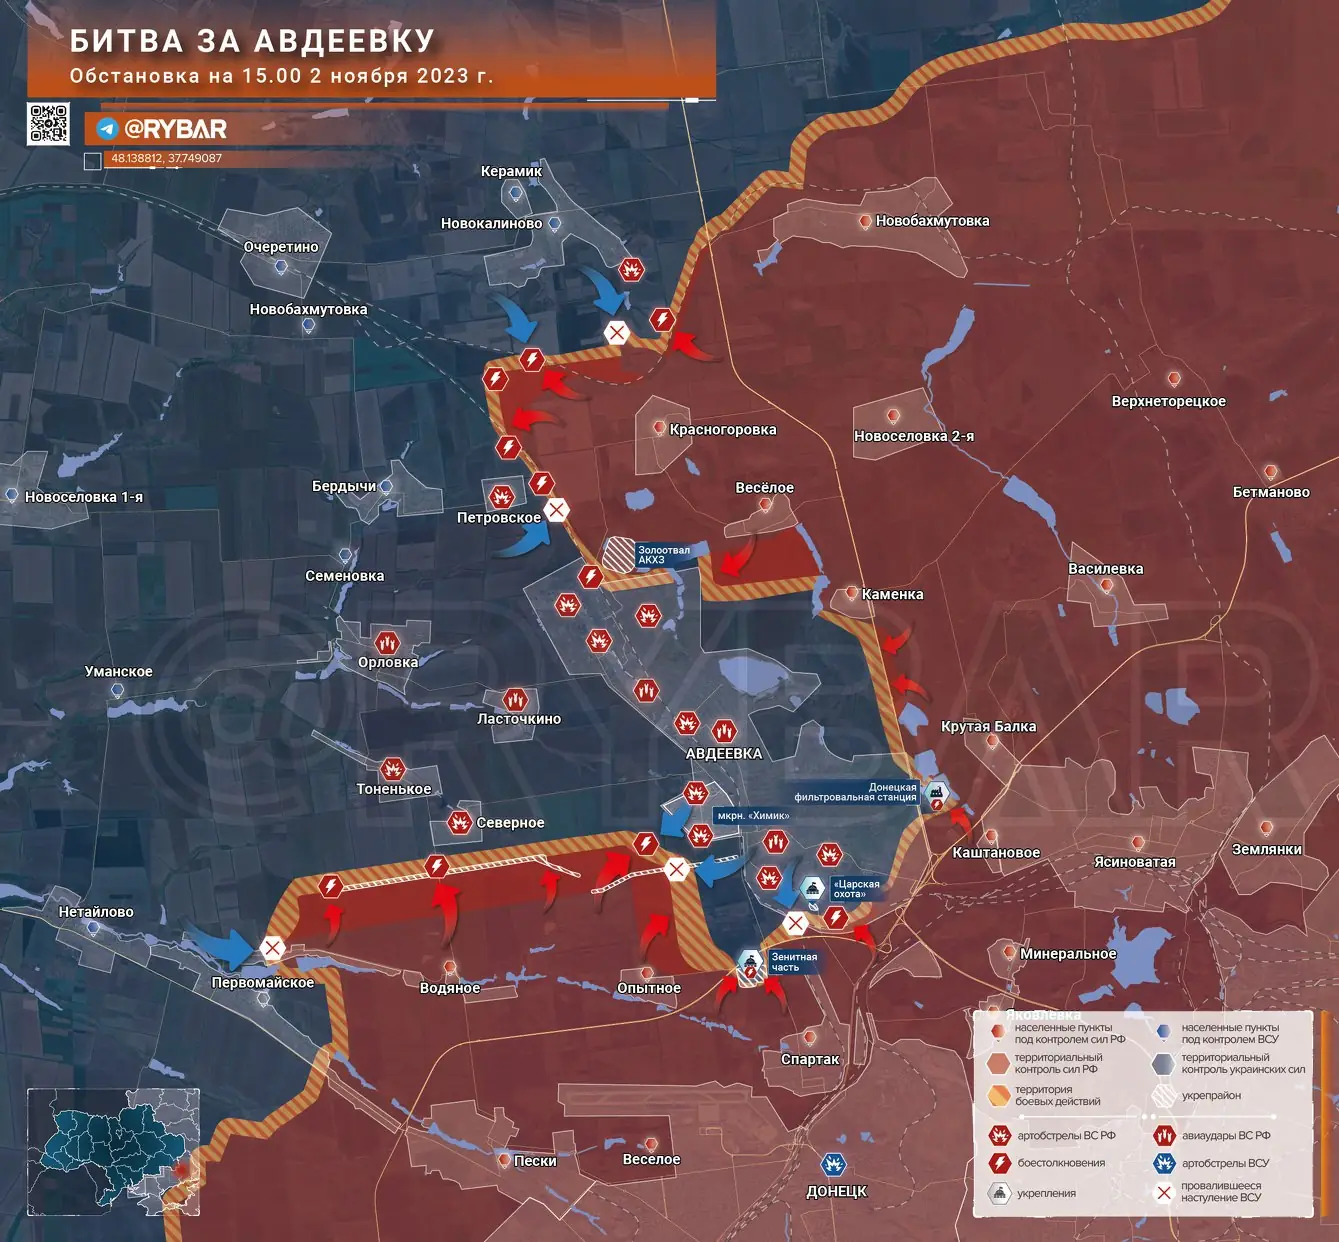 Битва за Авдеевку: активное продвижение ВС РФ с юга и севера